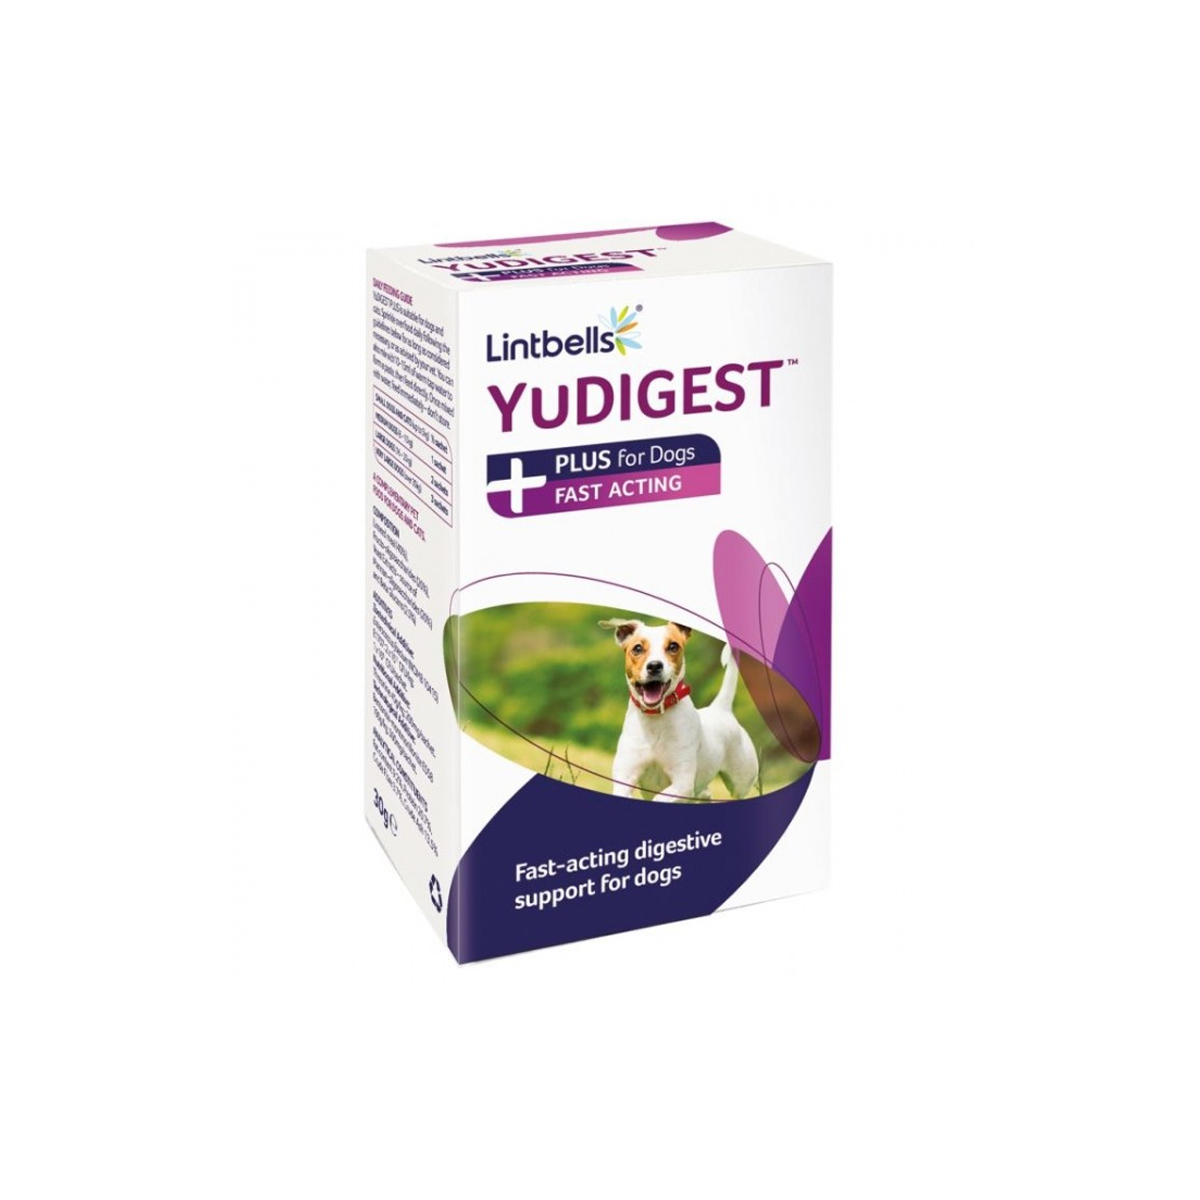 Supliment digestiv pentru caini si pisici YuDIGEST PLUS, 6 plicuri thepetclub